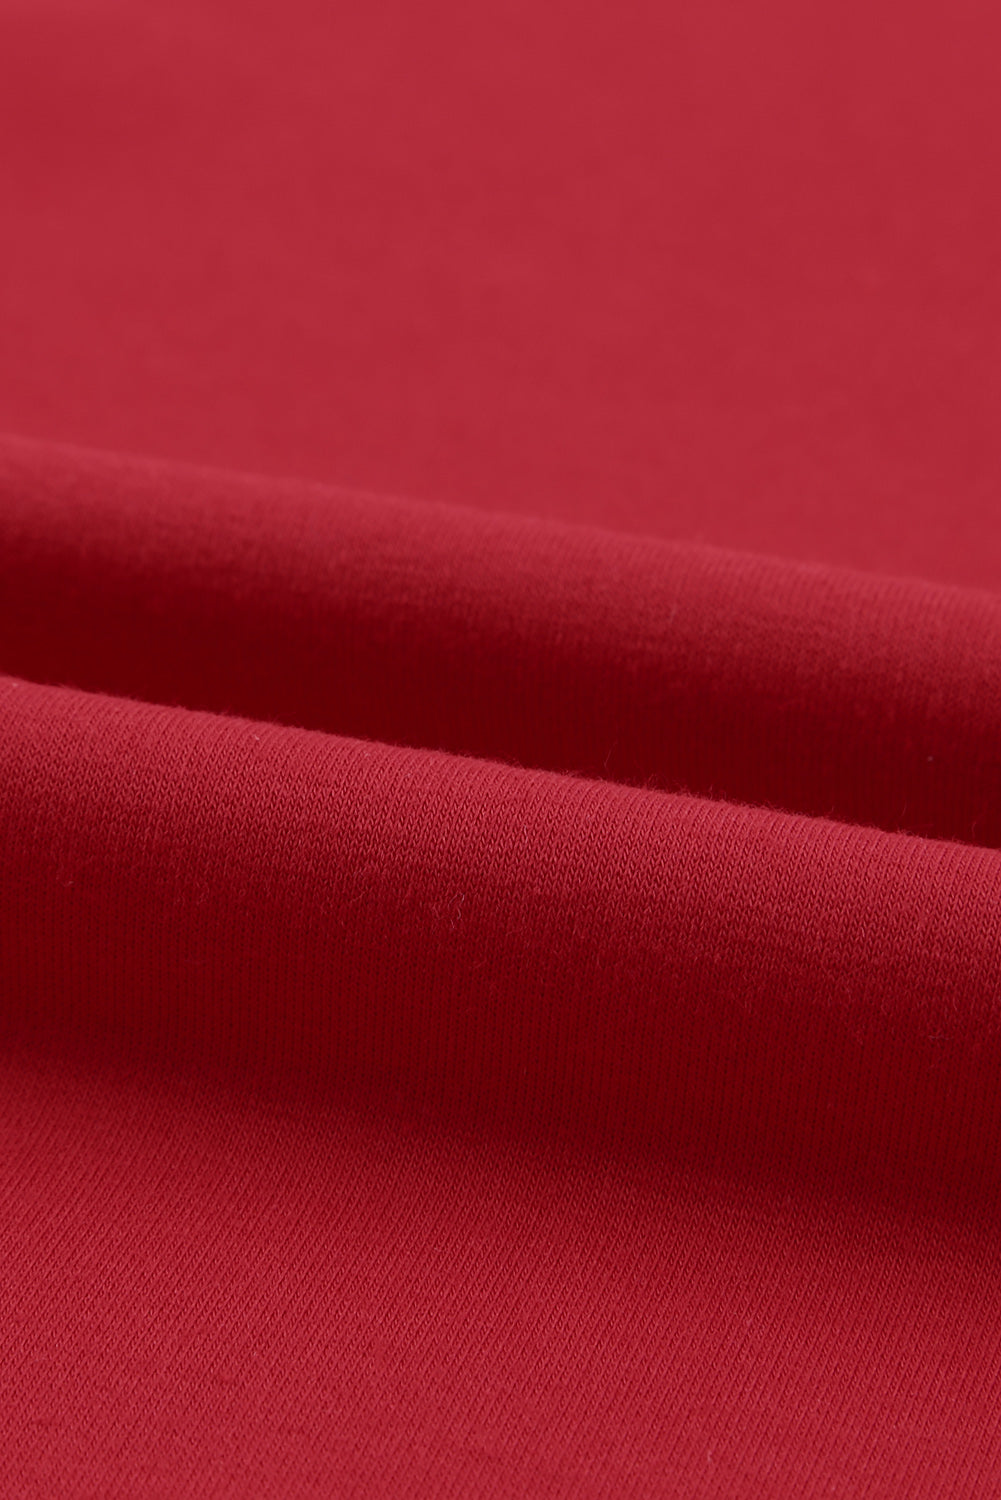 Sweat-shirt à manches raglan et col rond uni rouge vif